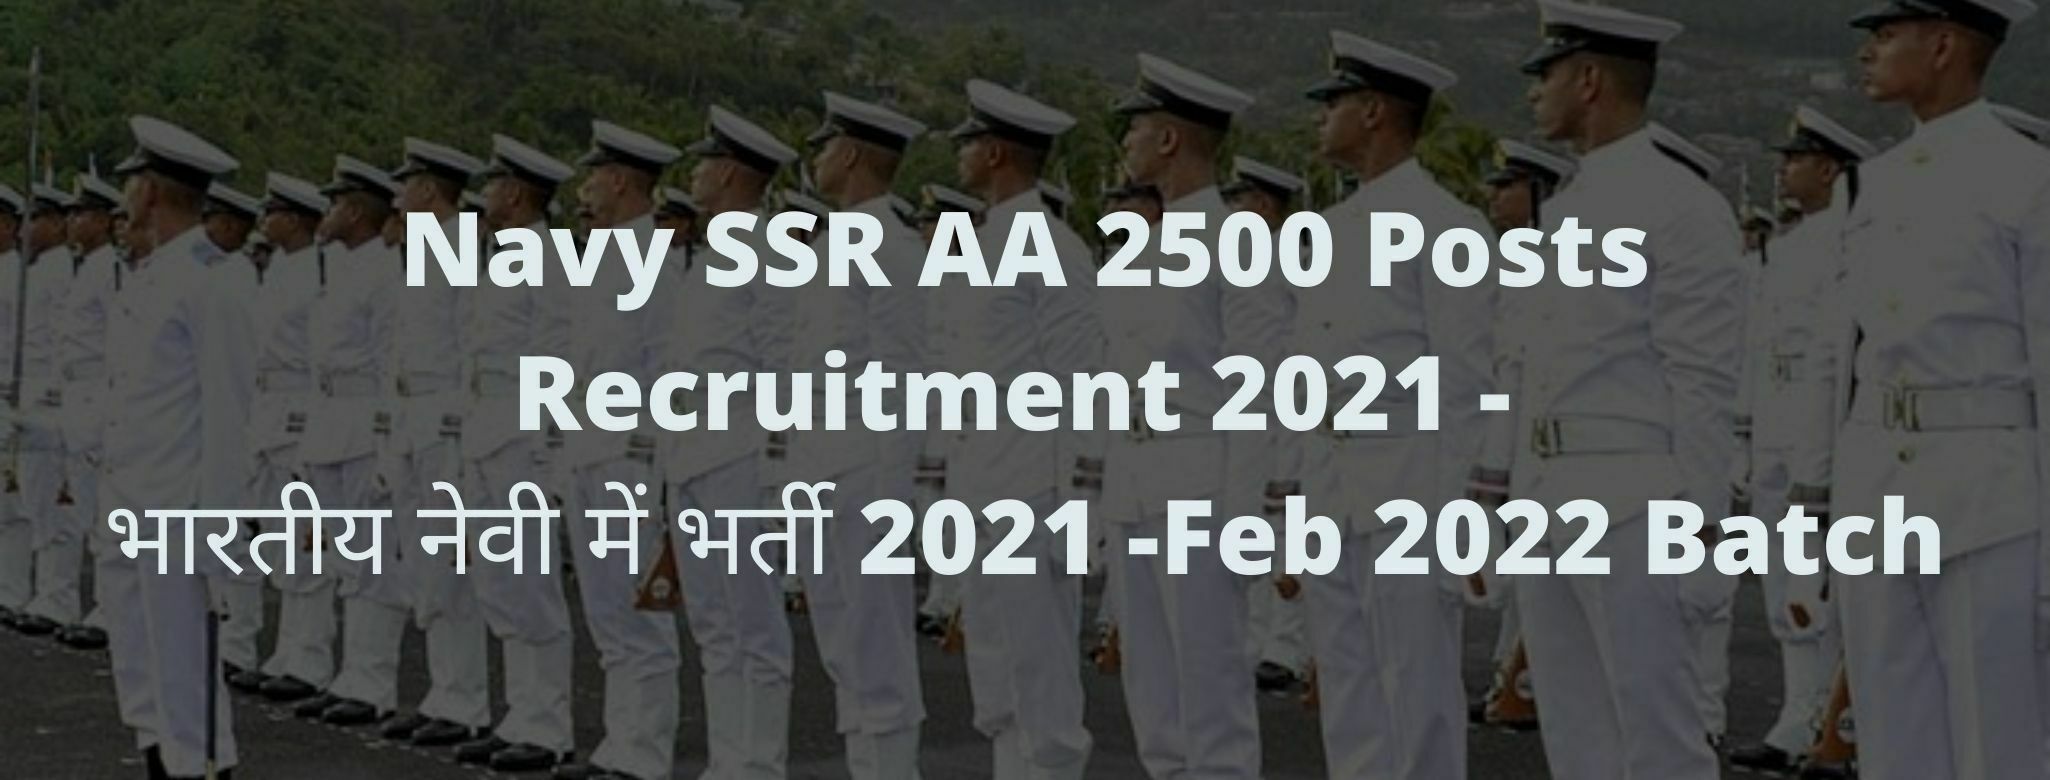 Navy SSR AA Recruitment 2021